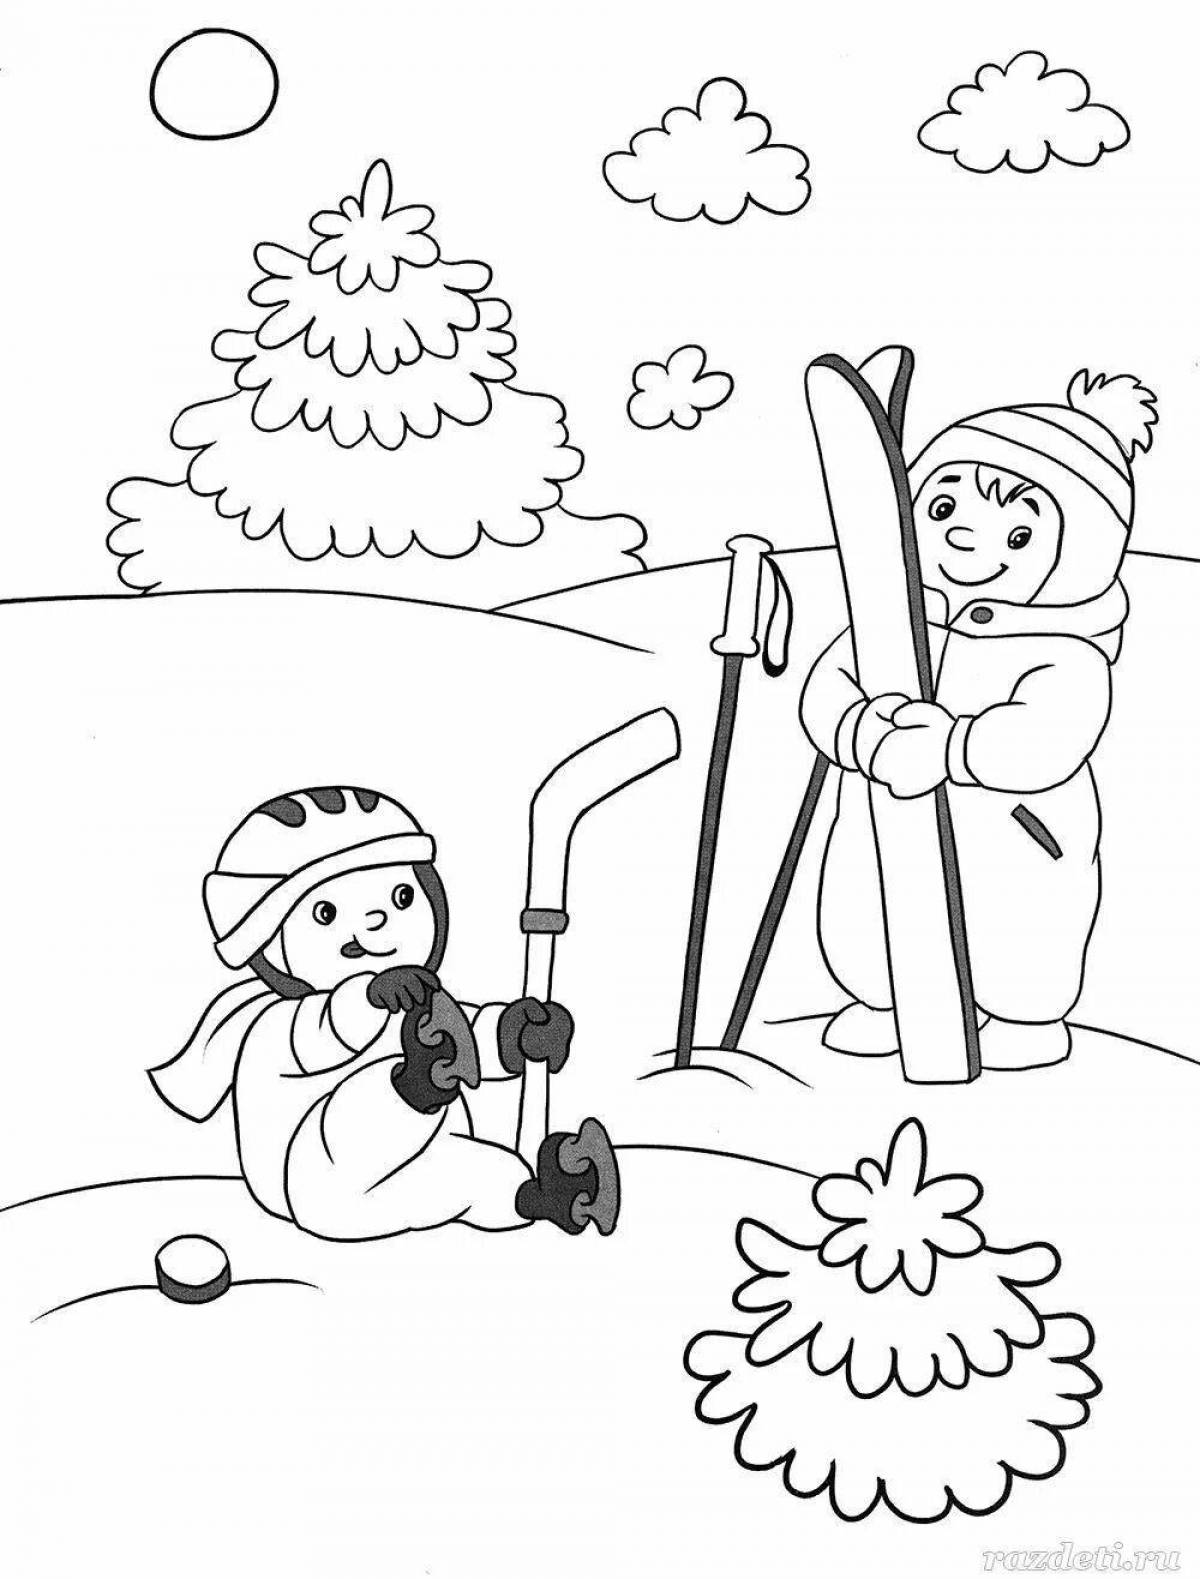 Joyful winter coloring for preschoolers